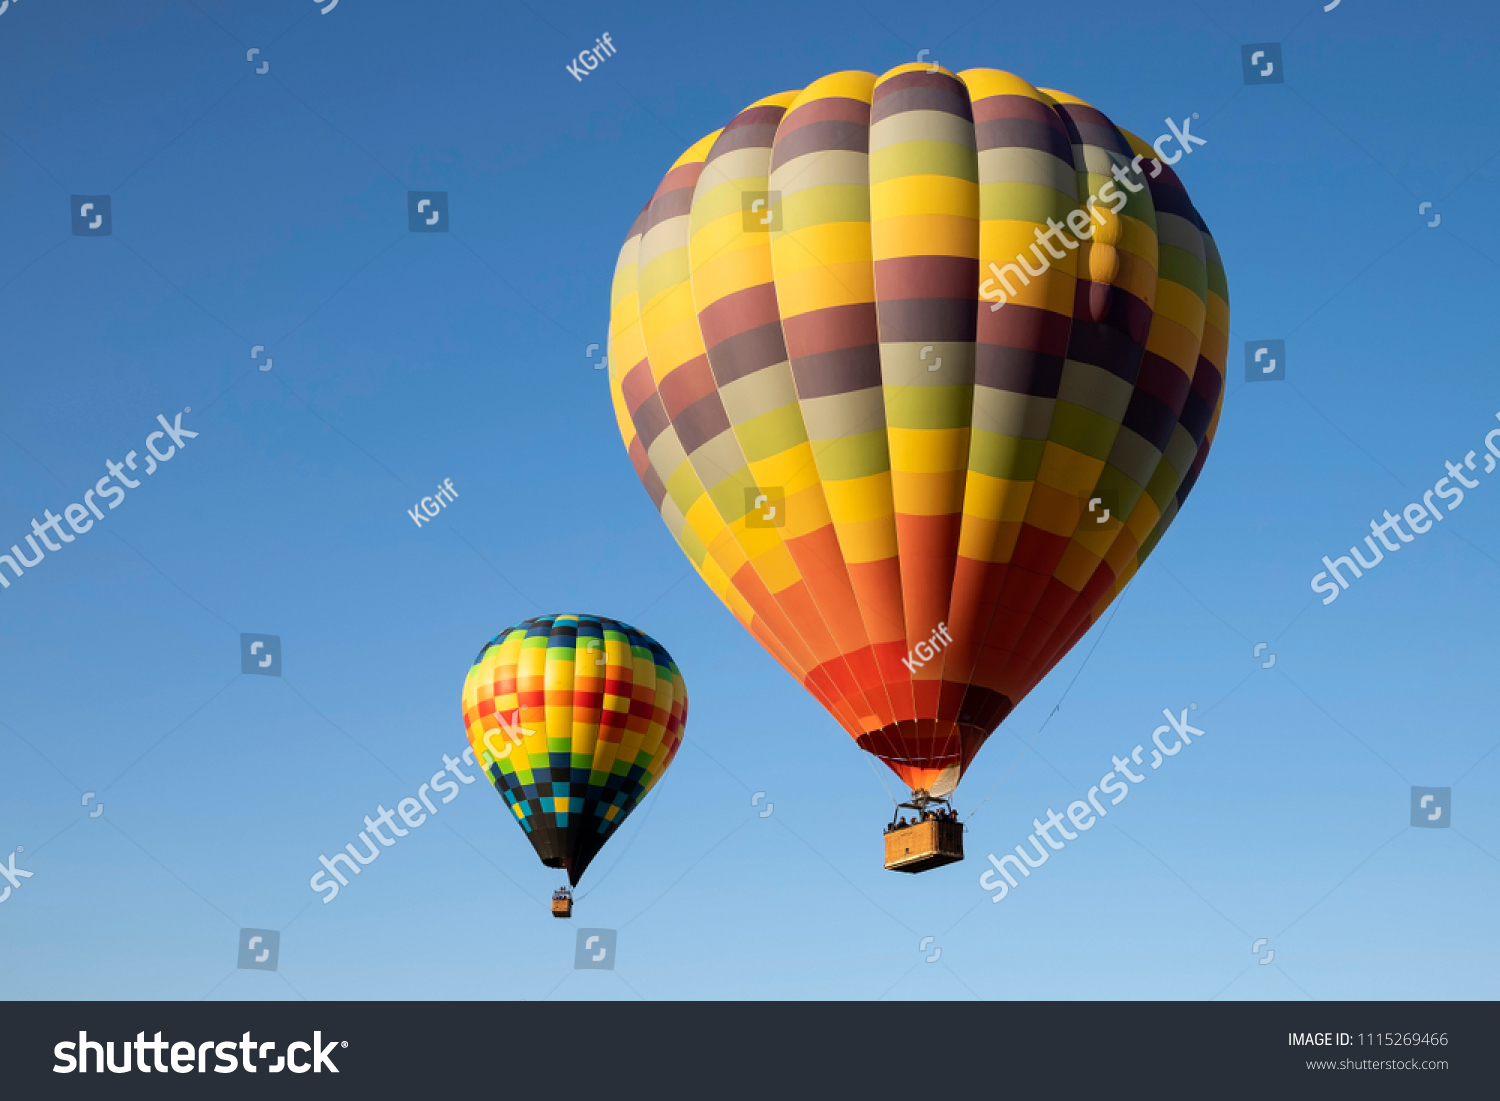 hot air balloon rides california